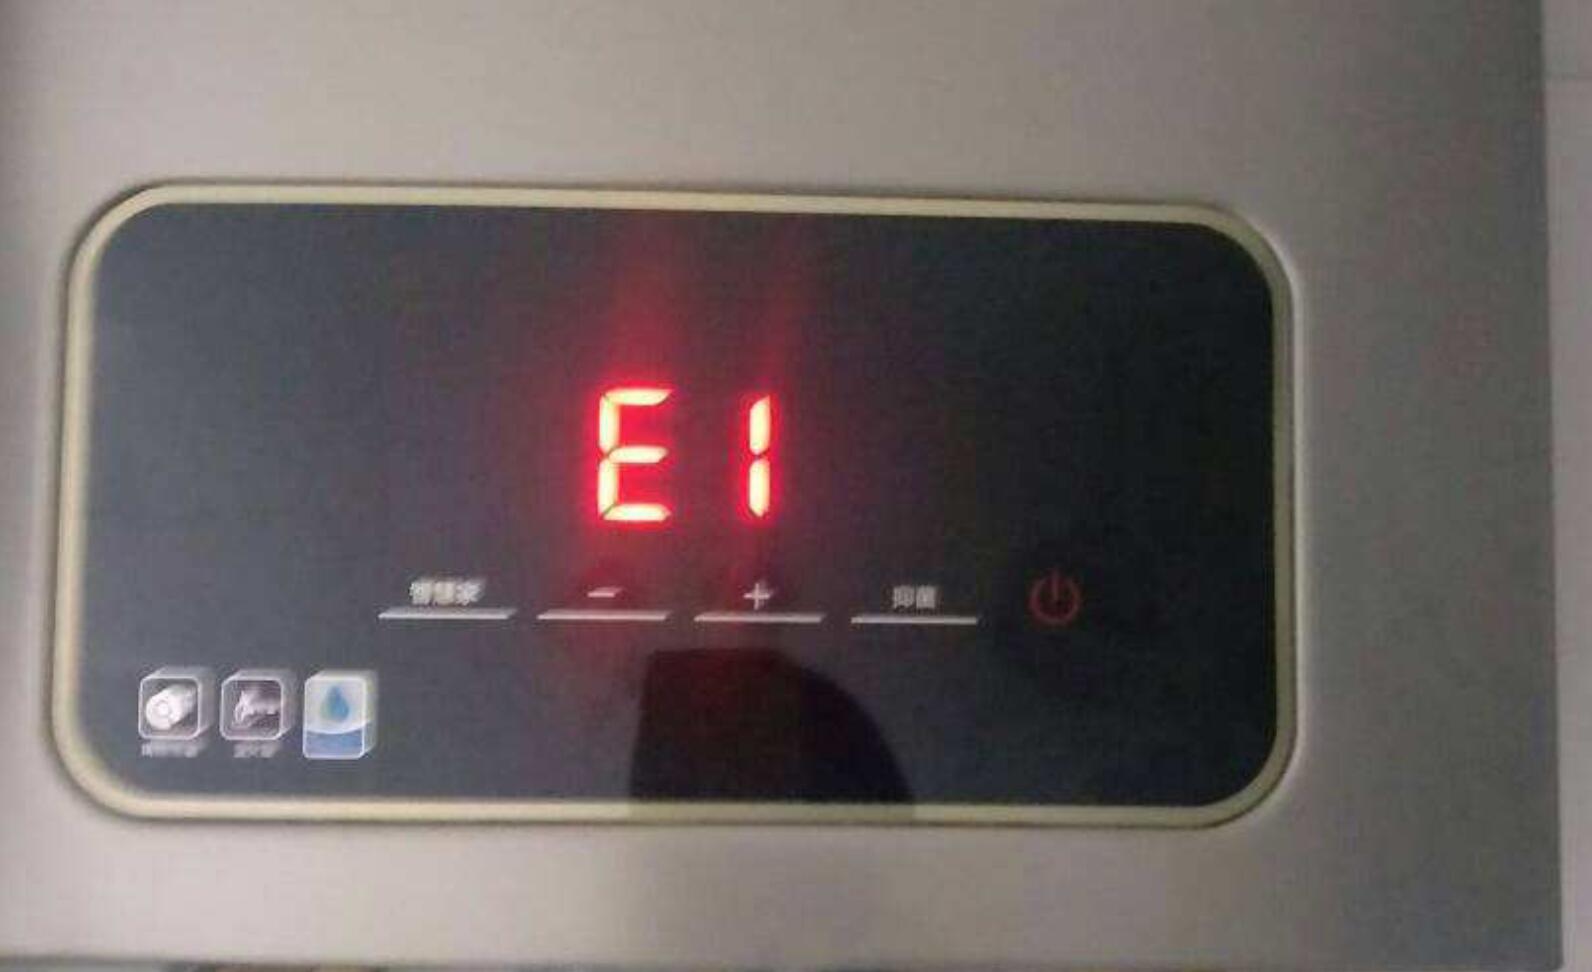 热水器显示e1是什么意思 热水器显示e1怎么解决